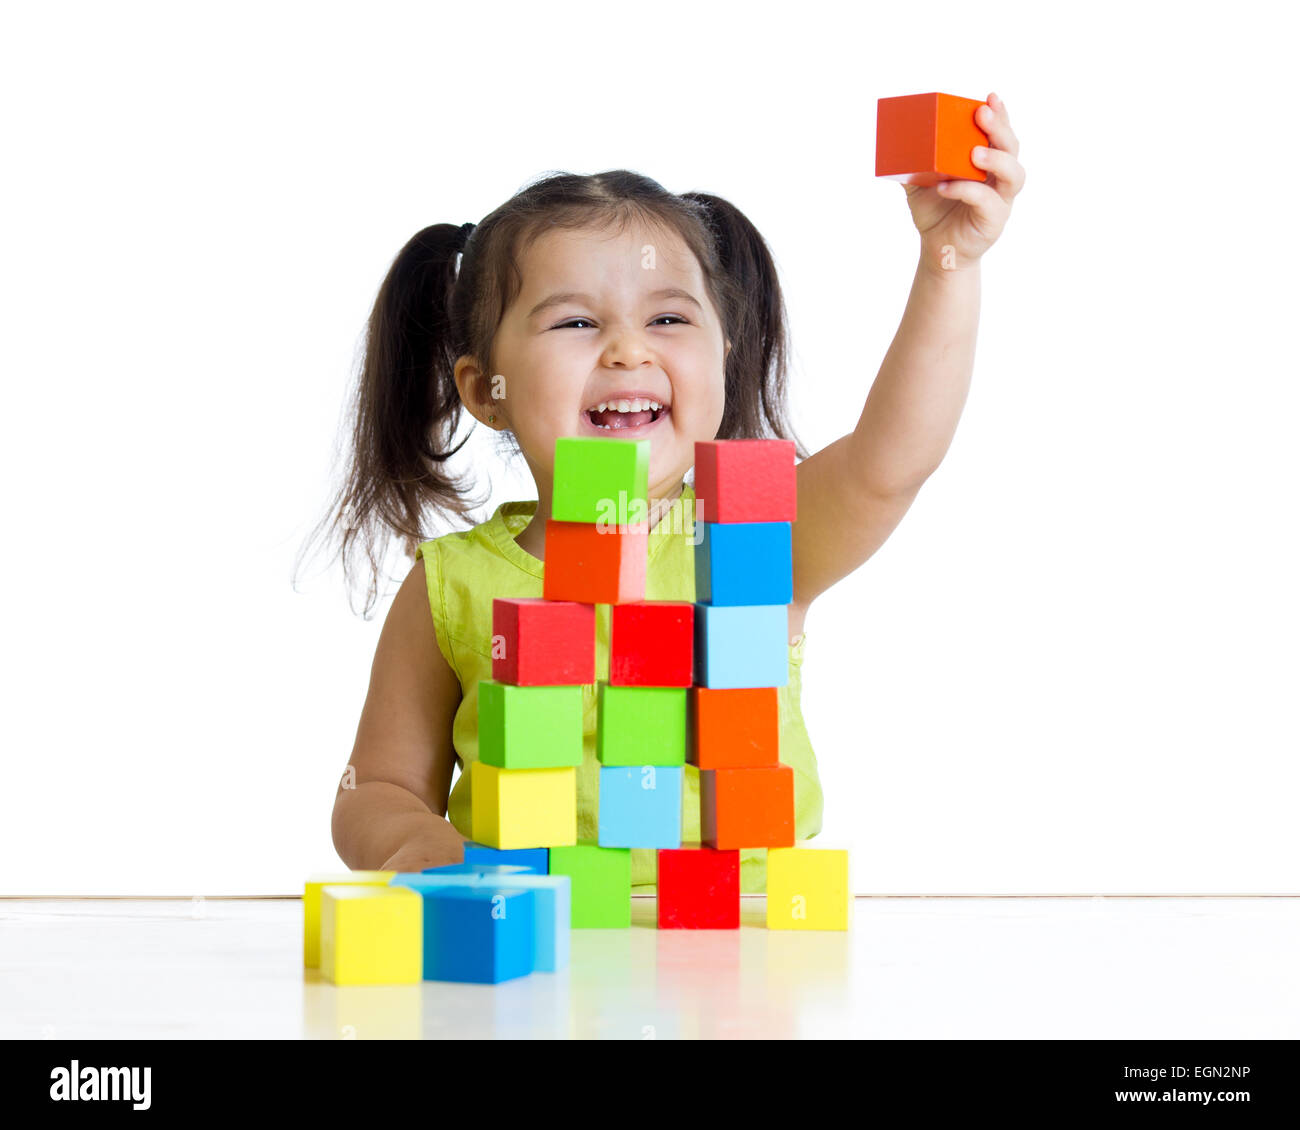 Kind spielt mit Bausteinen und zeigt rote Würfel Stockfoto